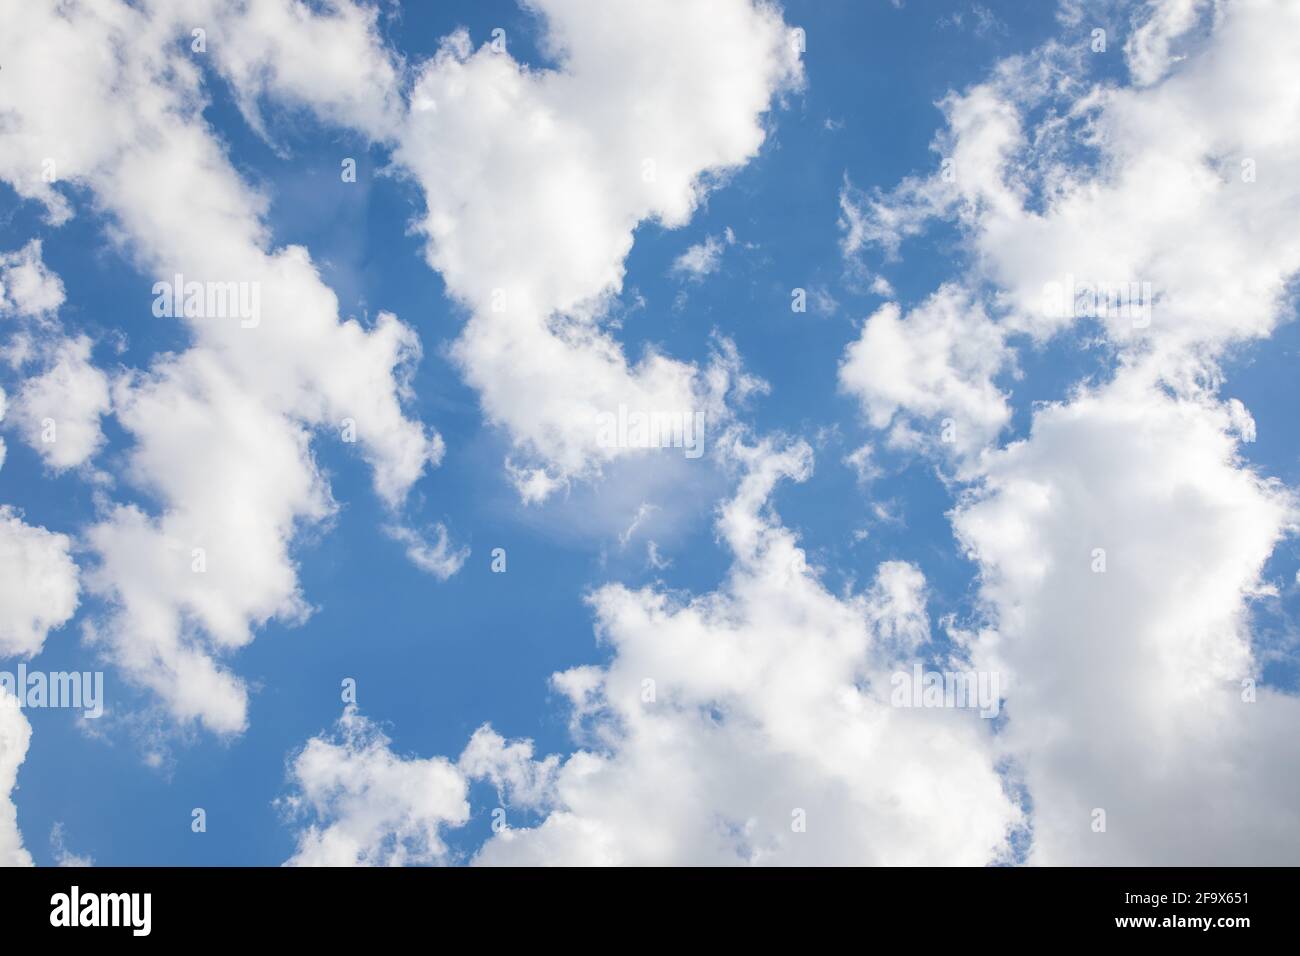 Blu sky with beautiful cumulus clouds Stock Photo